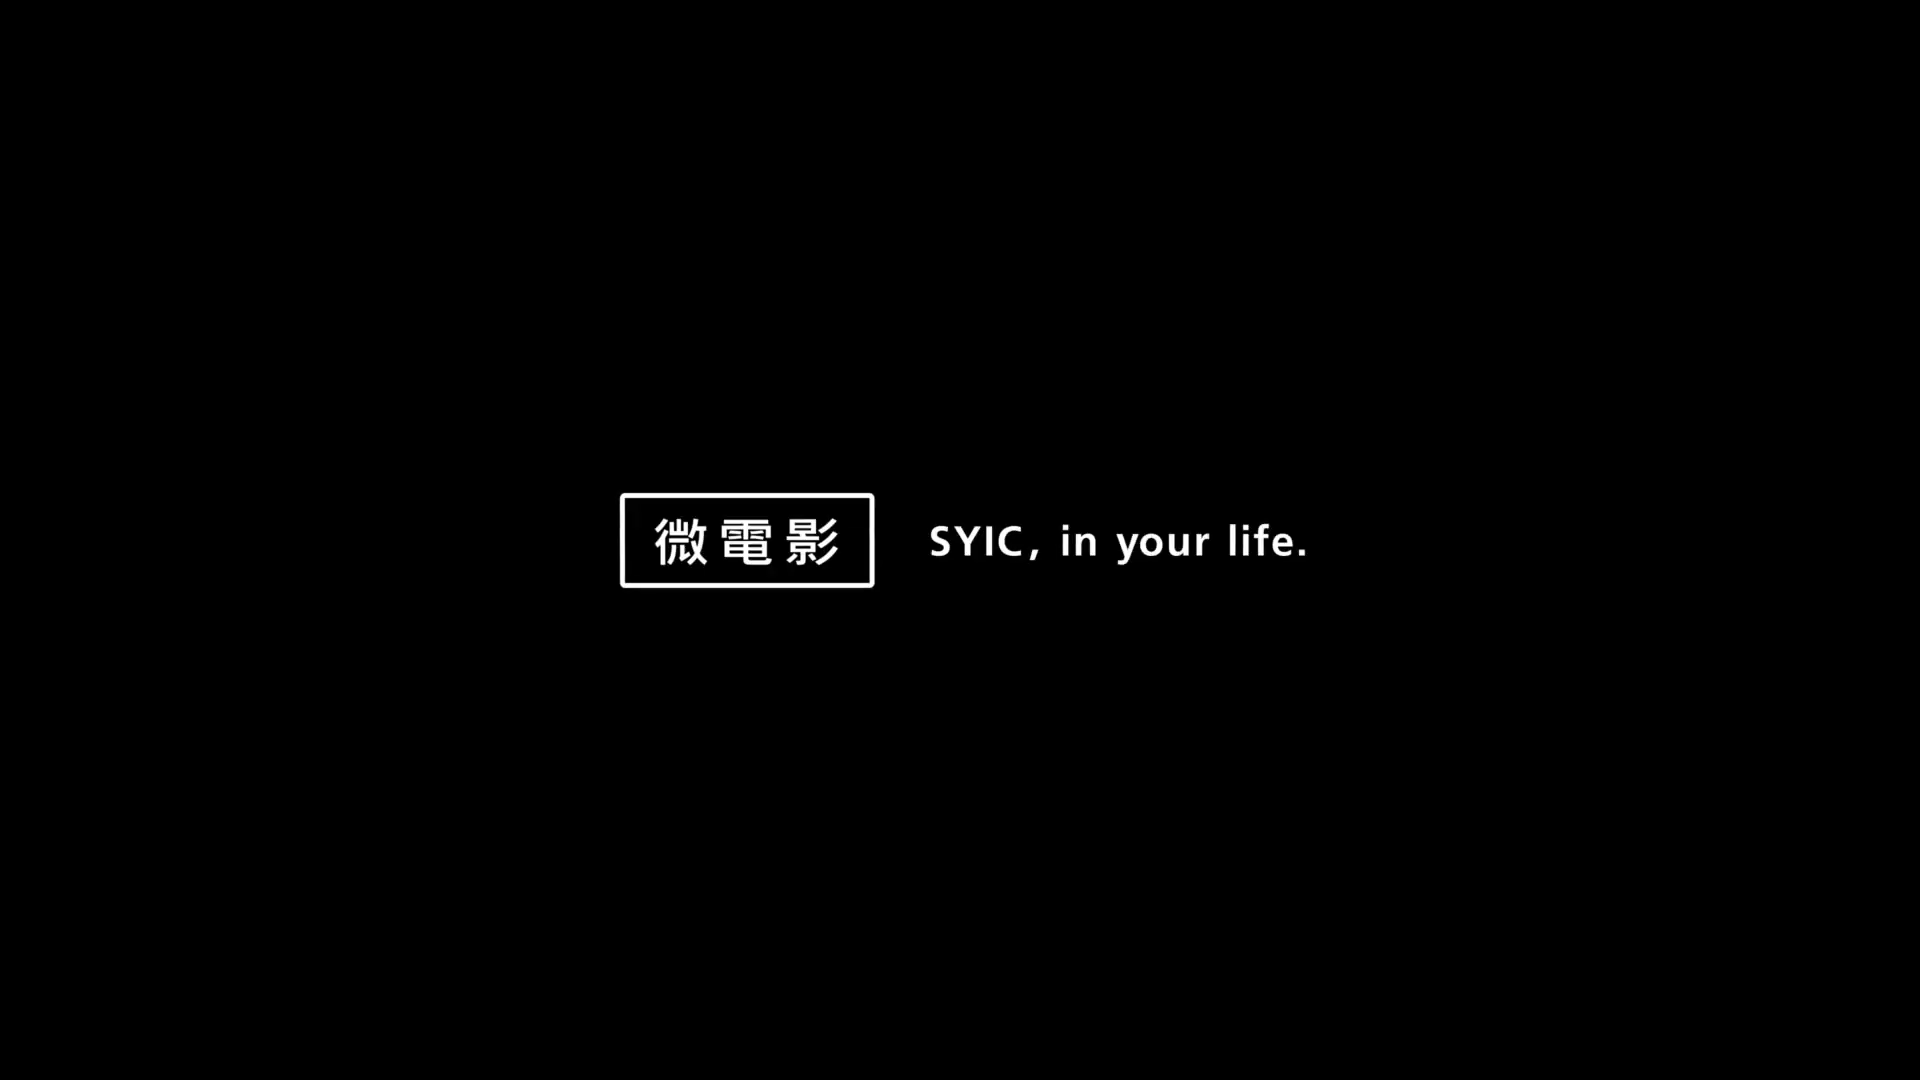 影片|SYIC, in your life (微電影)